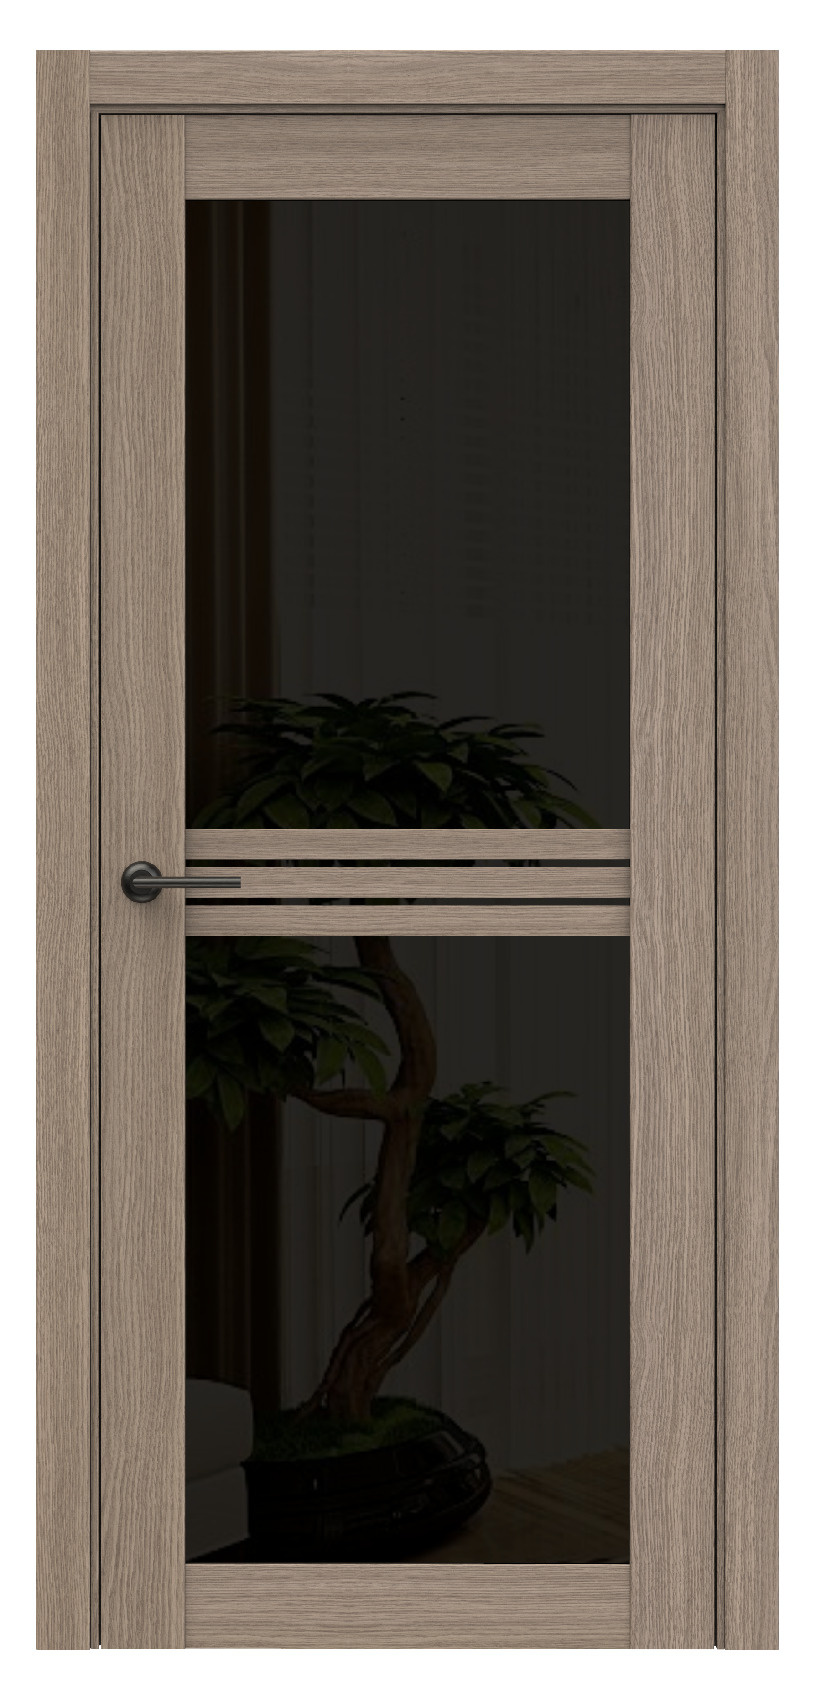 Questdoors Межкомнатная дверь Q73, арт. 17493 - фото №1